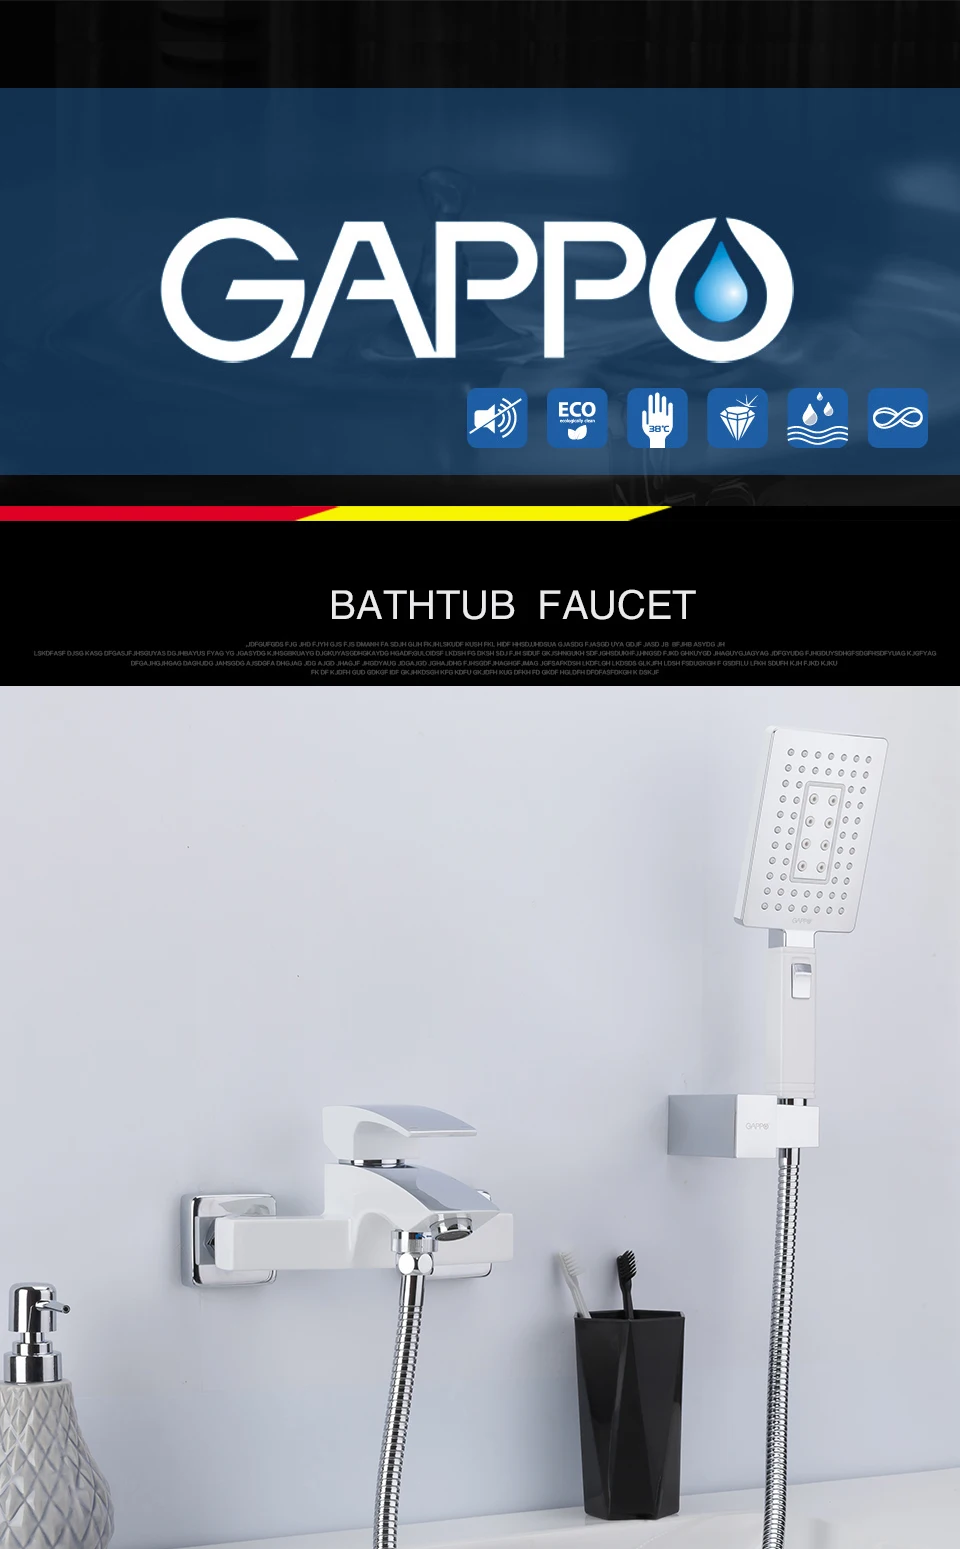 GAPPO кран с двумя ручками, ванные краны белый смесители для ванных комнат кран для ванны, душа душевая головка для душа с Смеситель для ухода за внешностью и экономия воды кран